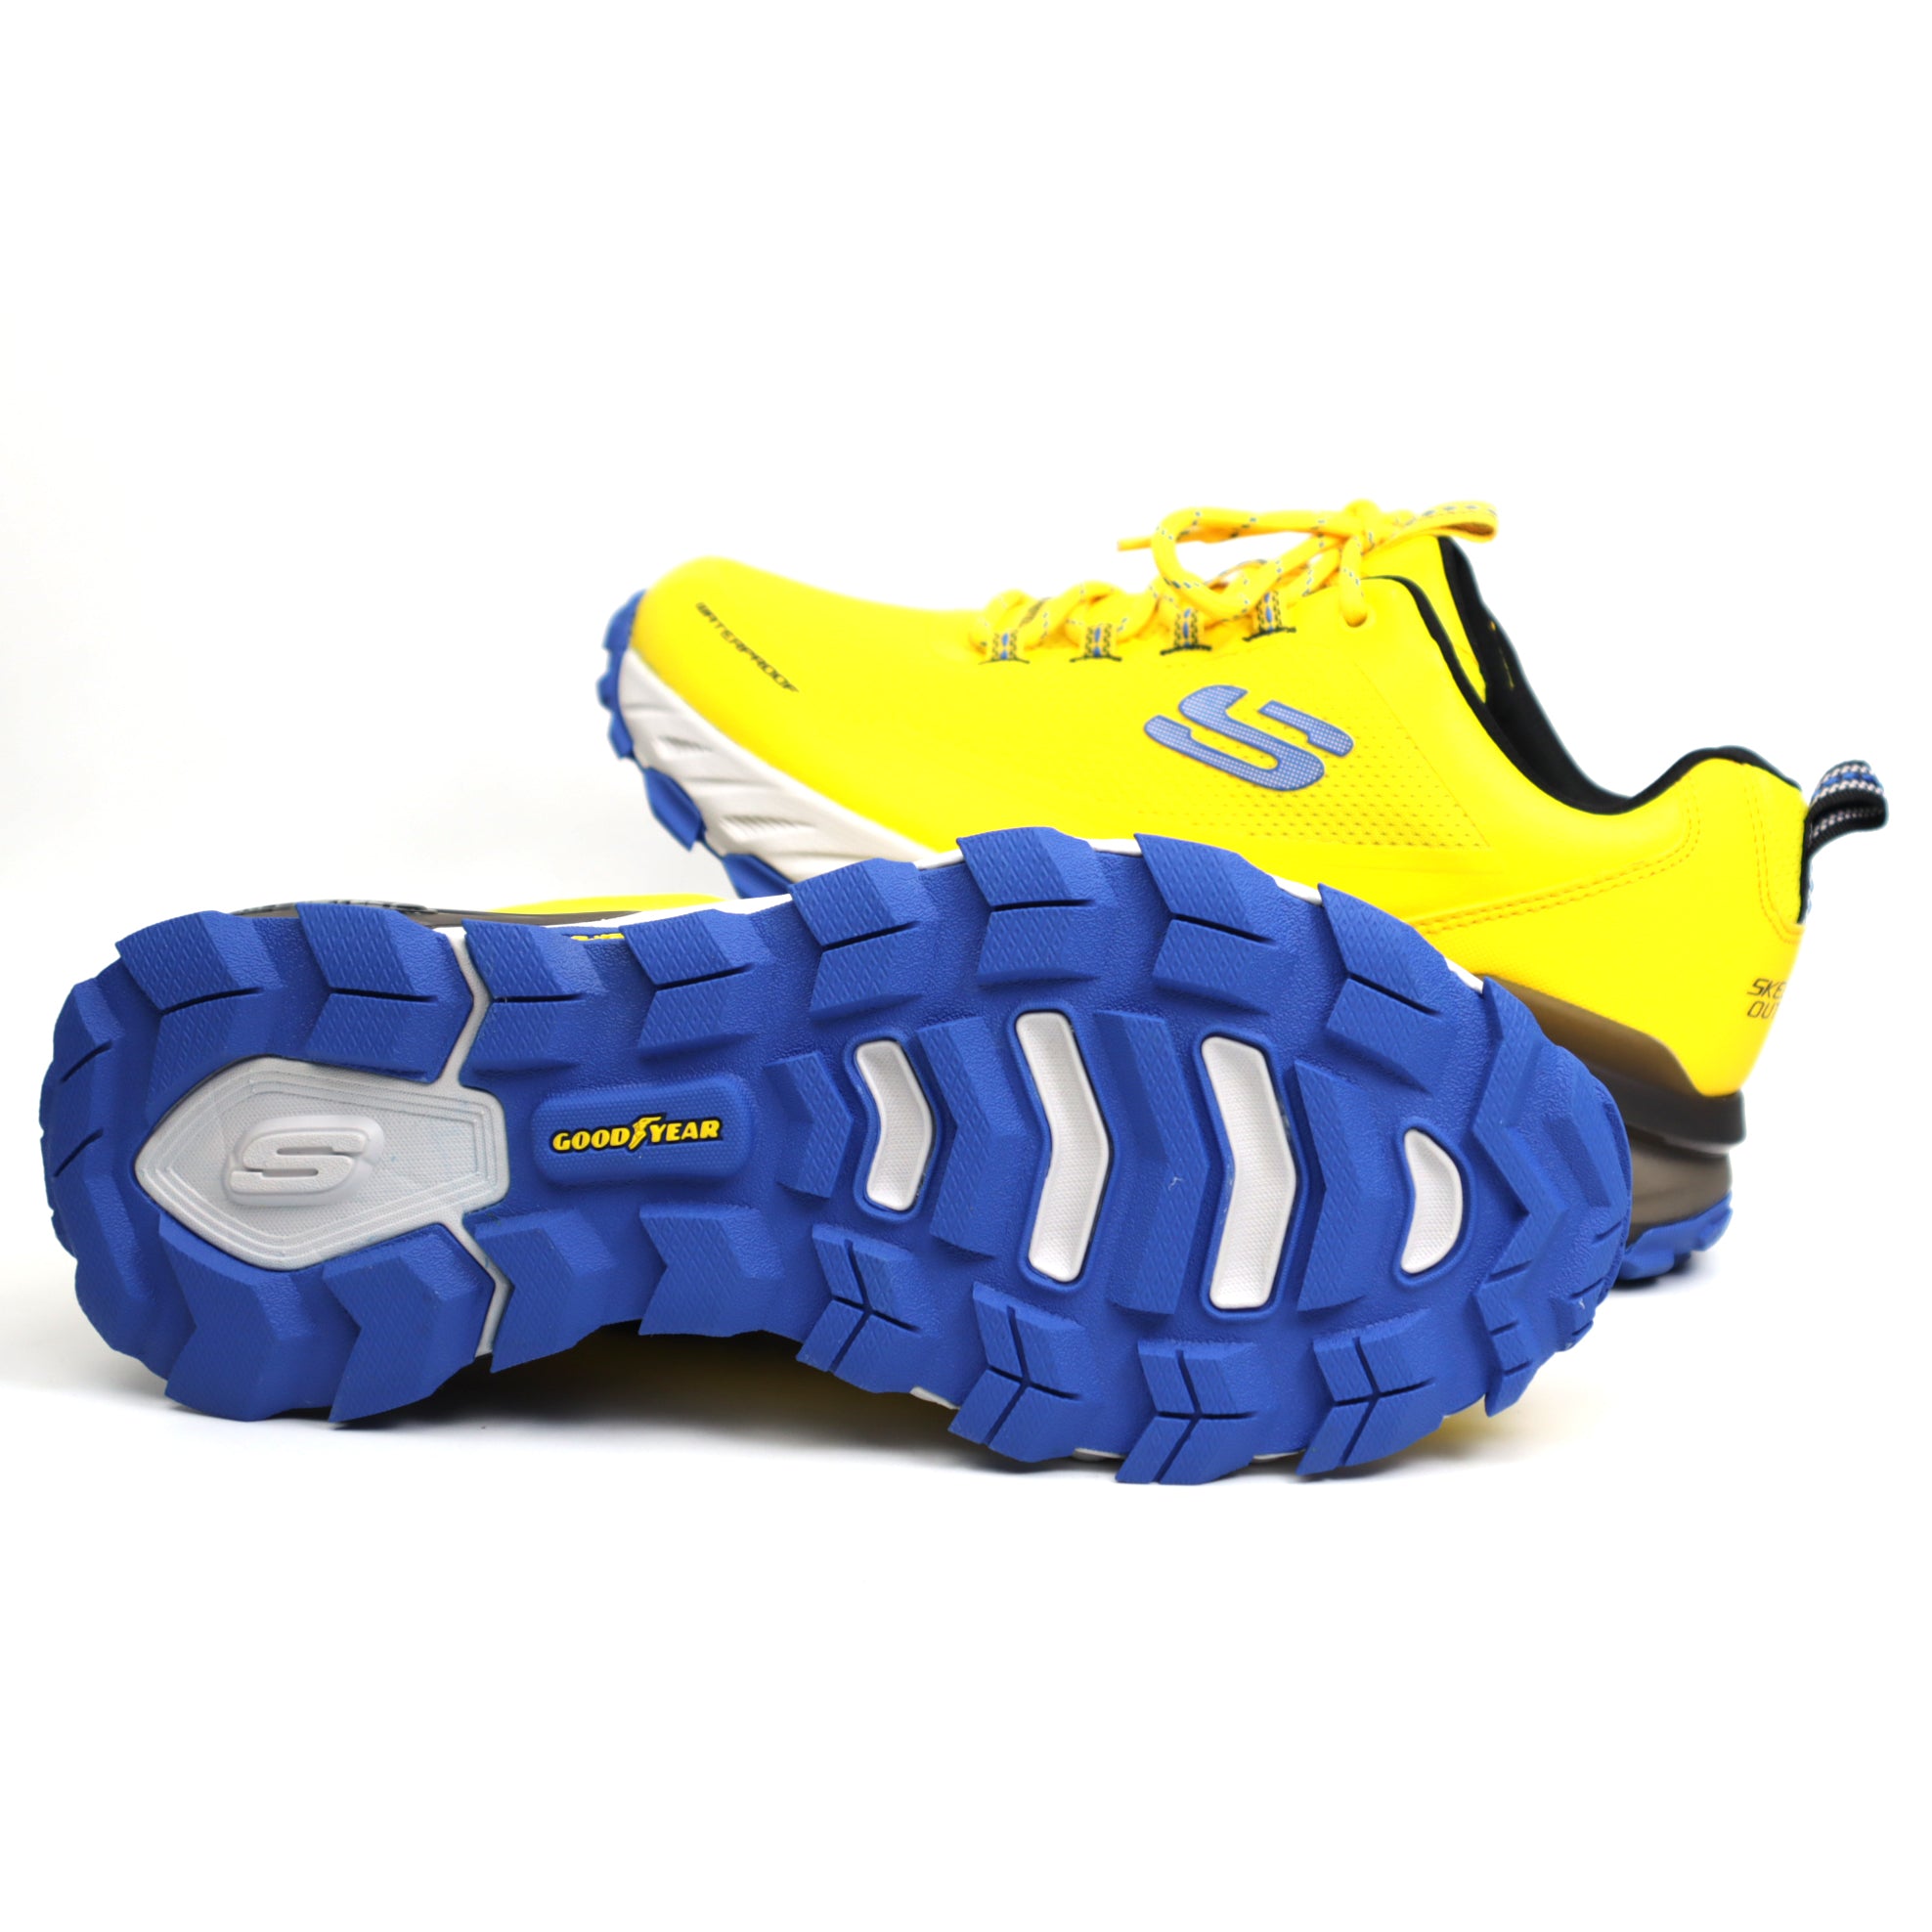 Skechers Pantofi barbati waterproof 237304 Max Protect Fast Track galben IB2304-GLB